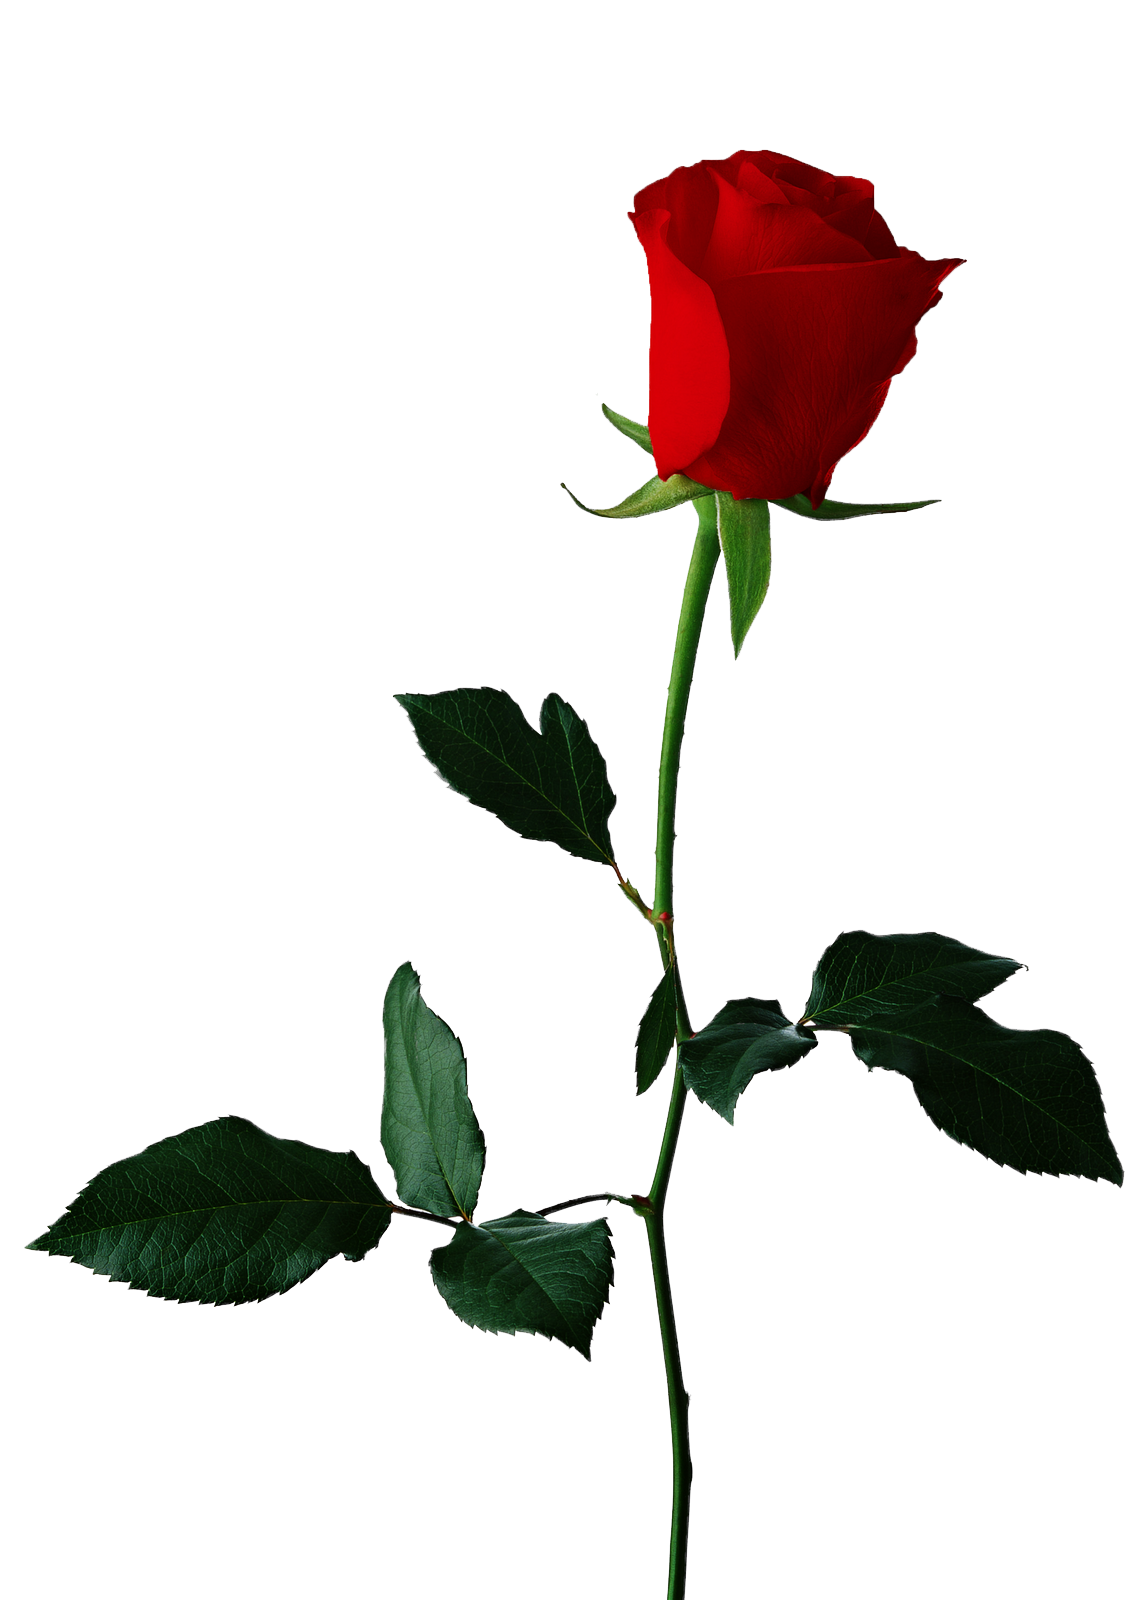 Download Single Red Rose Transparent Background Hq Png Image Freepngimg